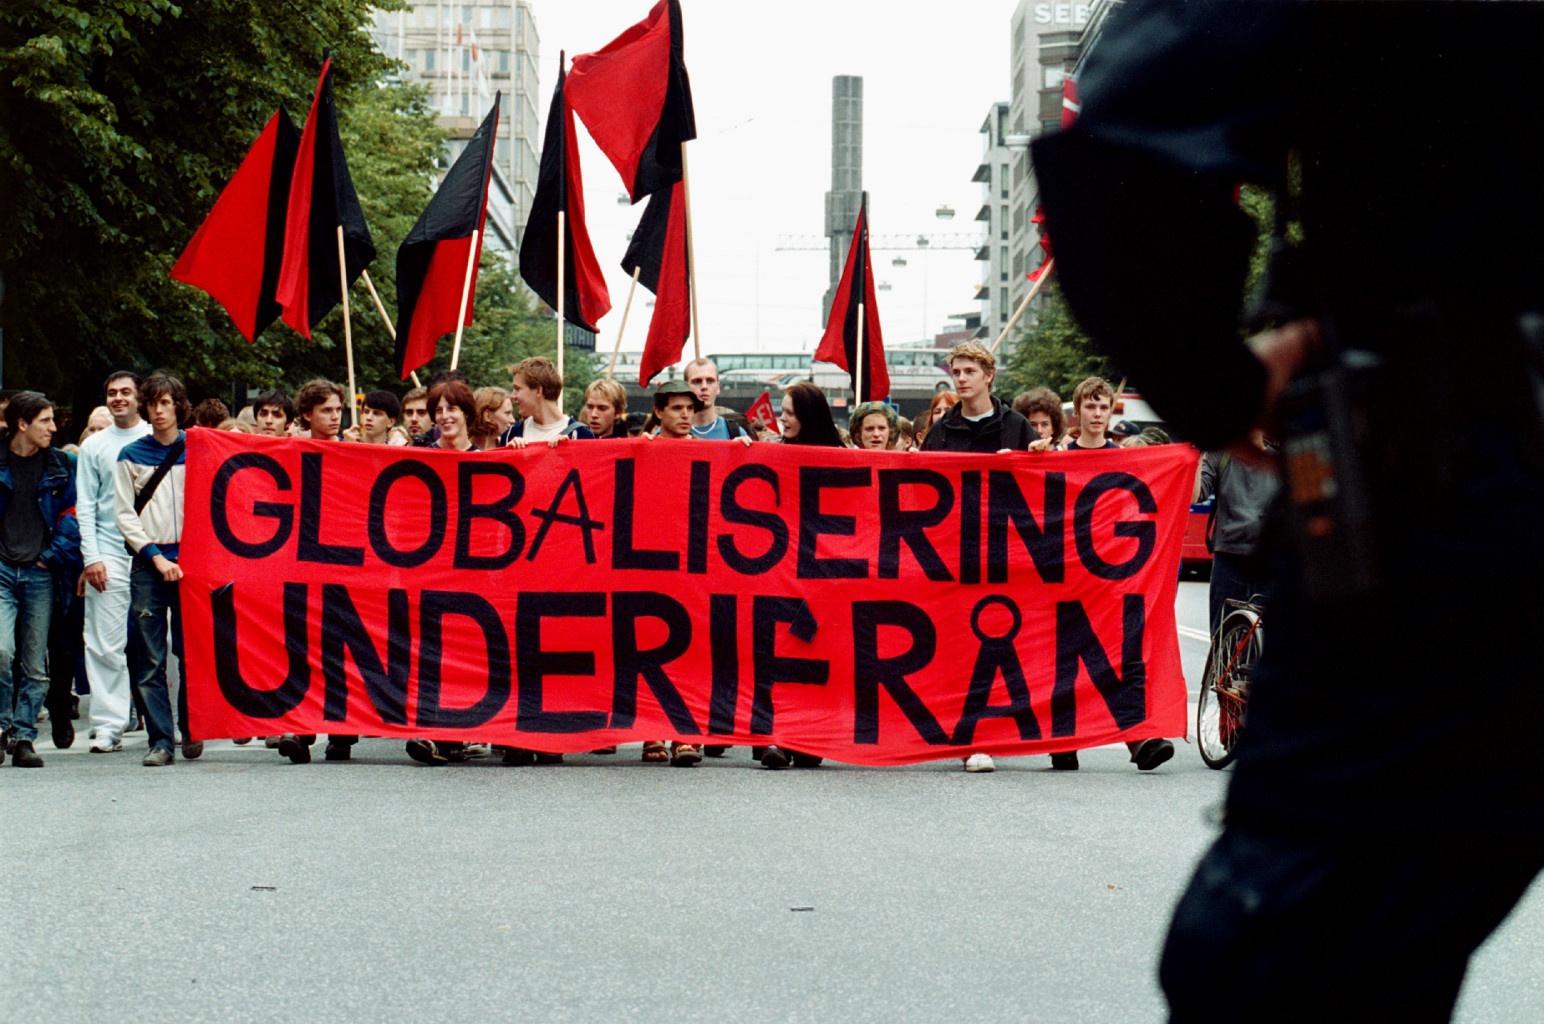 Manifestation i Stockholm inför G8-mötet i Genua i juli 2001. Demonstrationen hade organiserats av Globalisering underifrån, med deltagande av ett flertal andra vänstergrupper. Foto: Fredrik Persson/TT